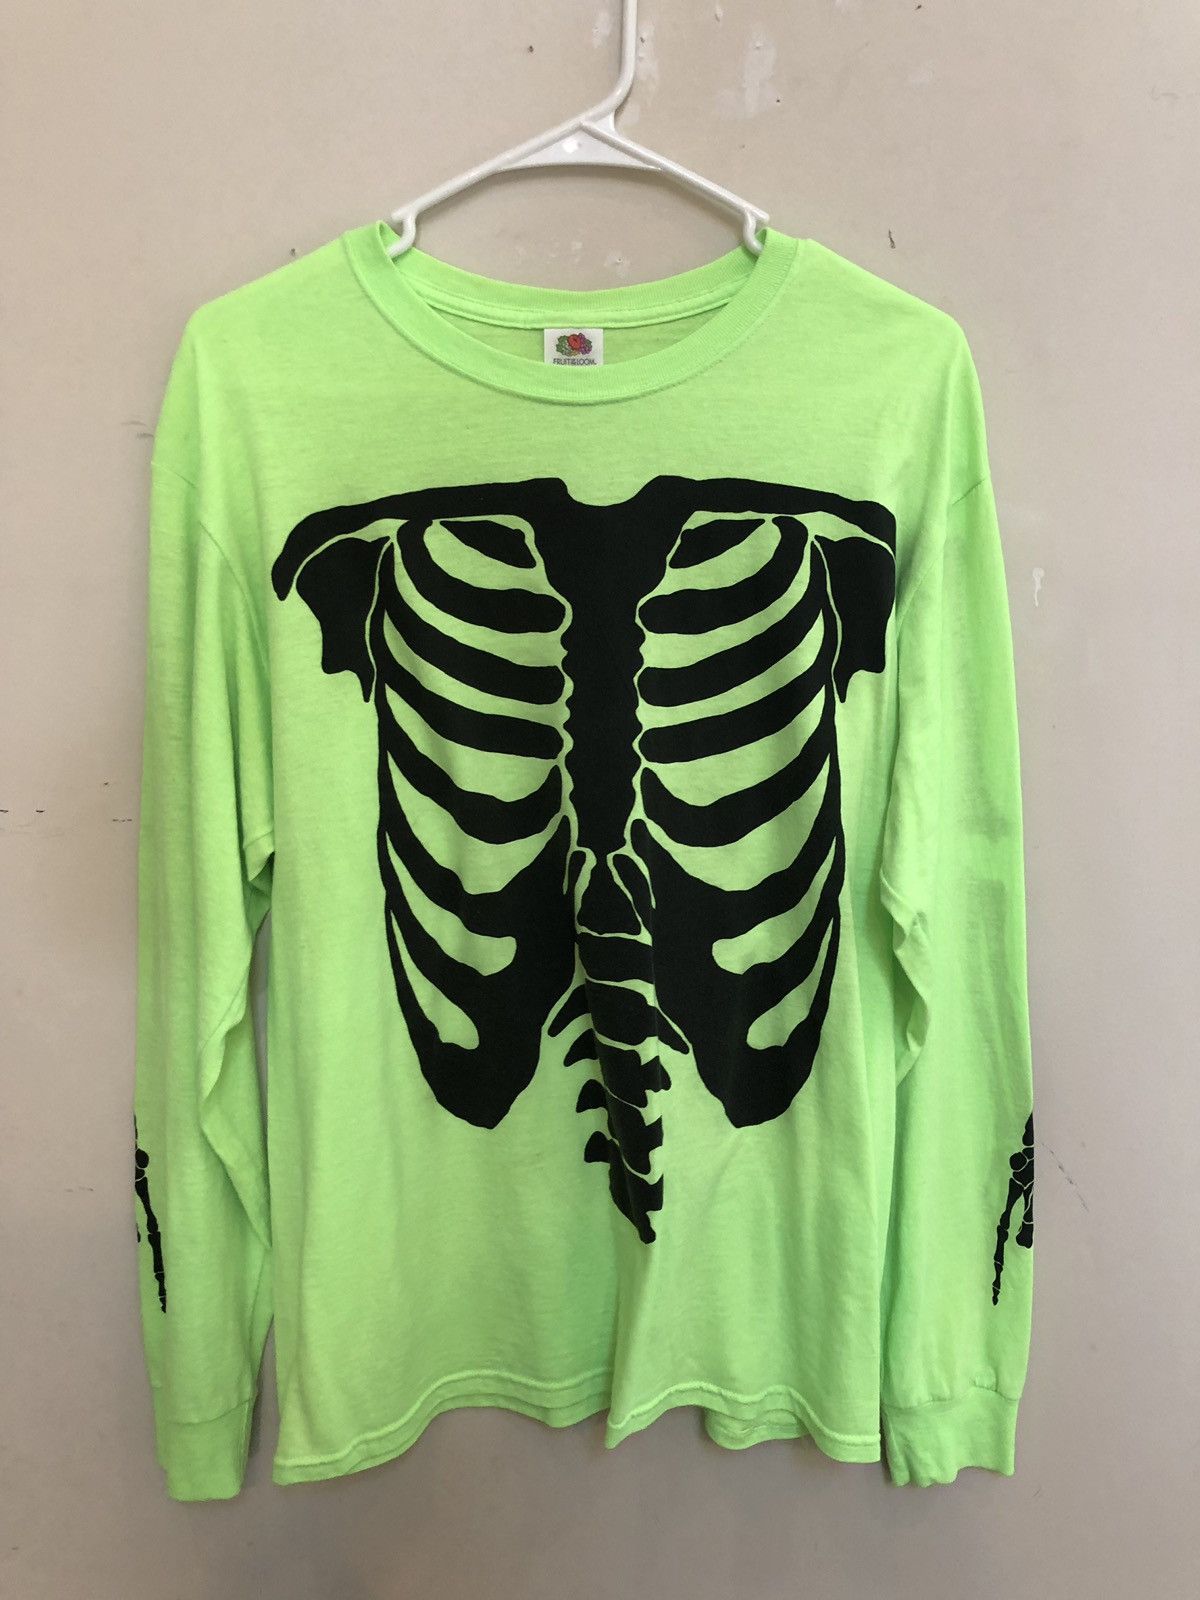 Vlone Playboi Carti Skeleton Die Lit Tour Shirt Size US M / EU 48-50 / 2 - 1 Preview